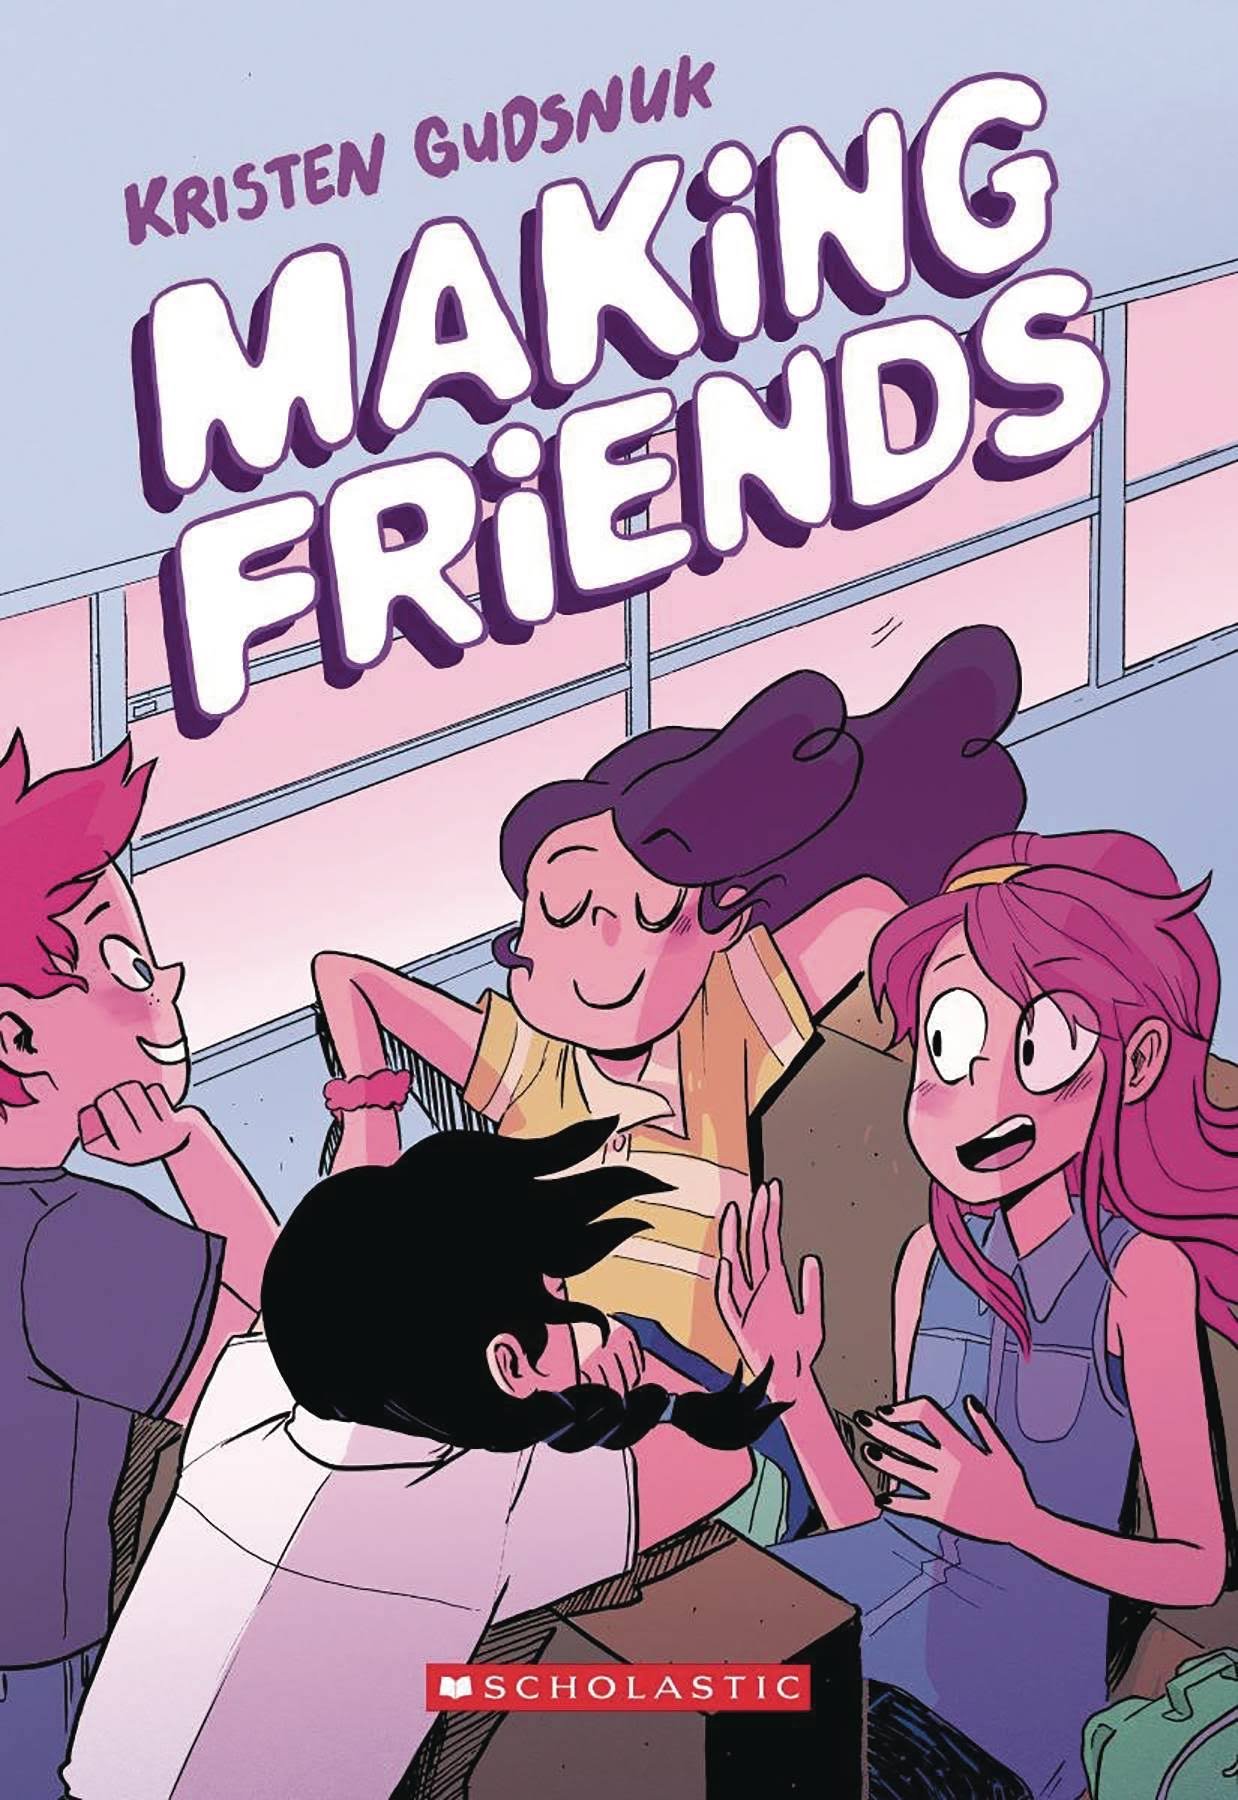 Making Friends [Book]